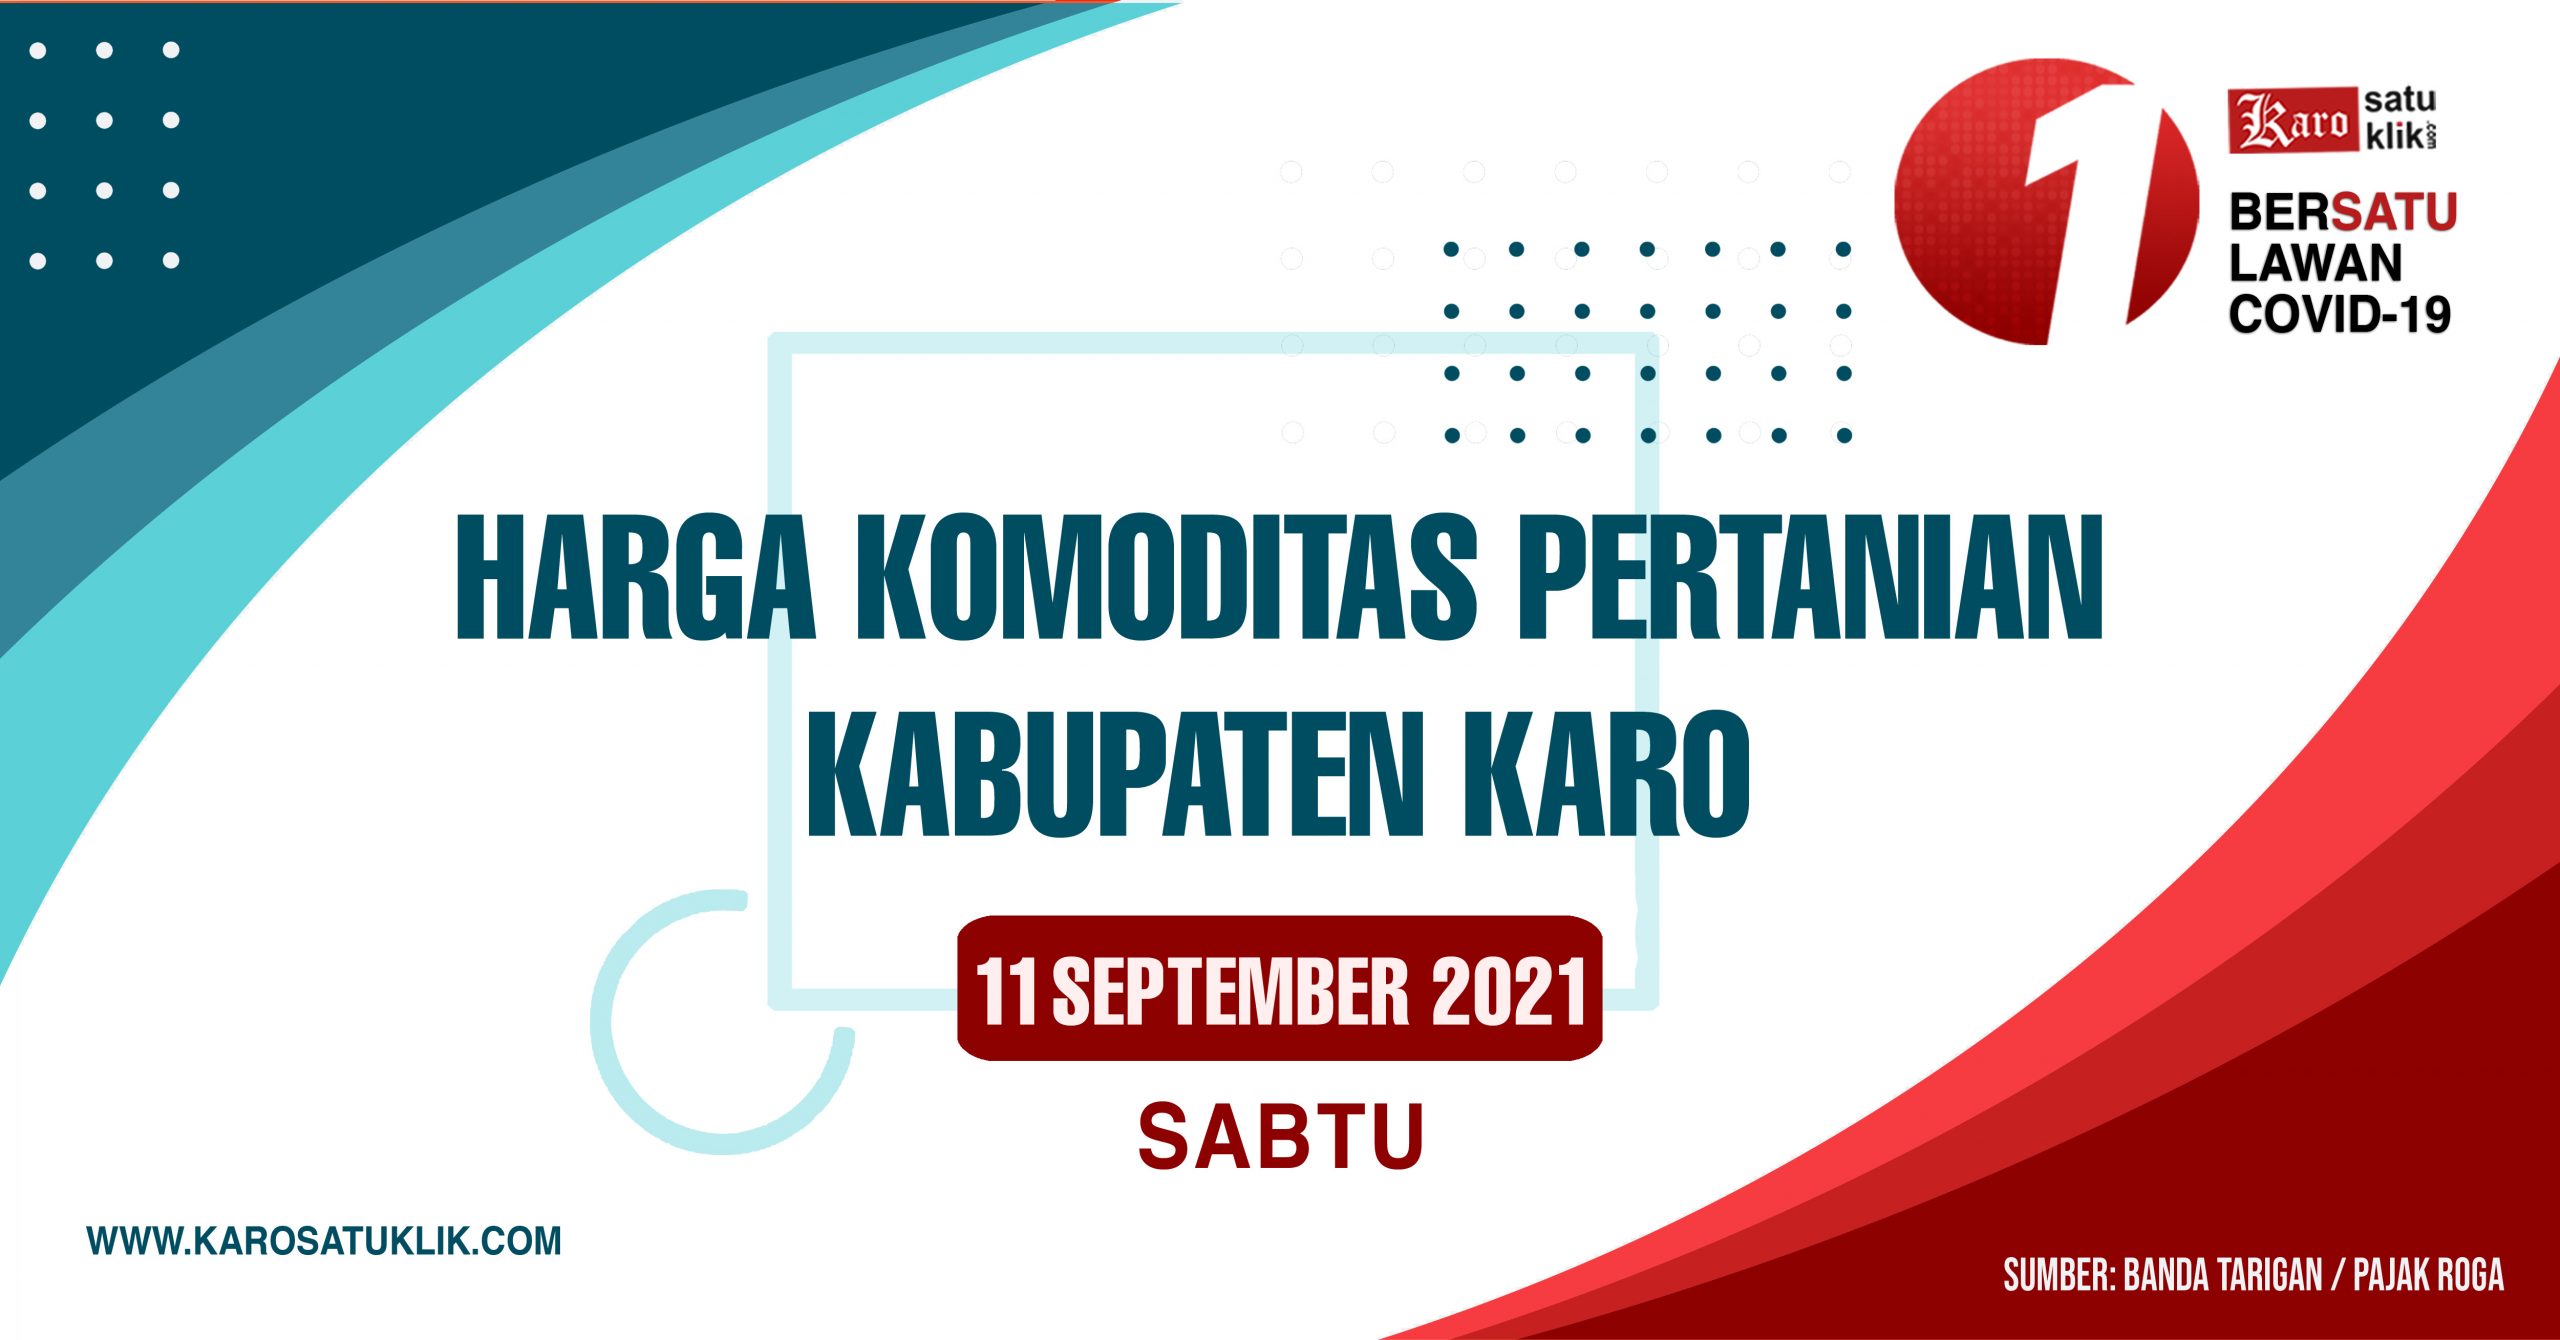 Daftar Harga Komoditas Pertanian Kabupaten Karo, 11 September 2021